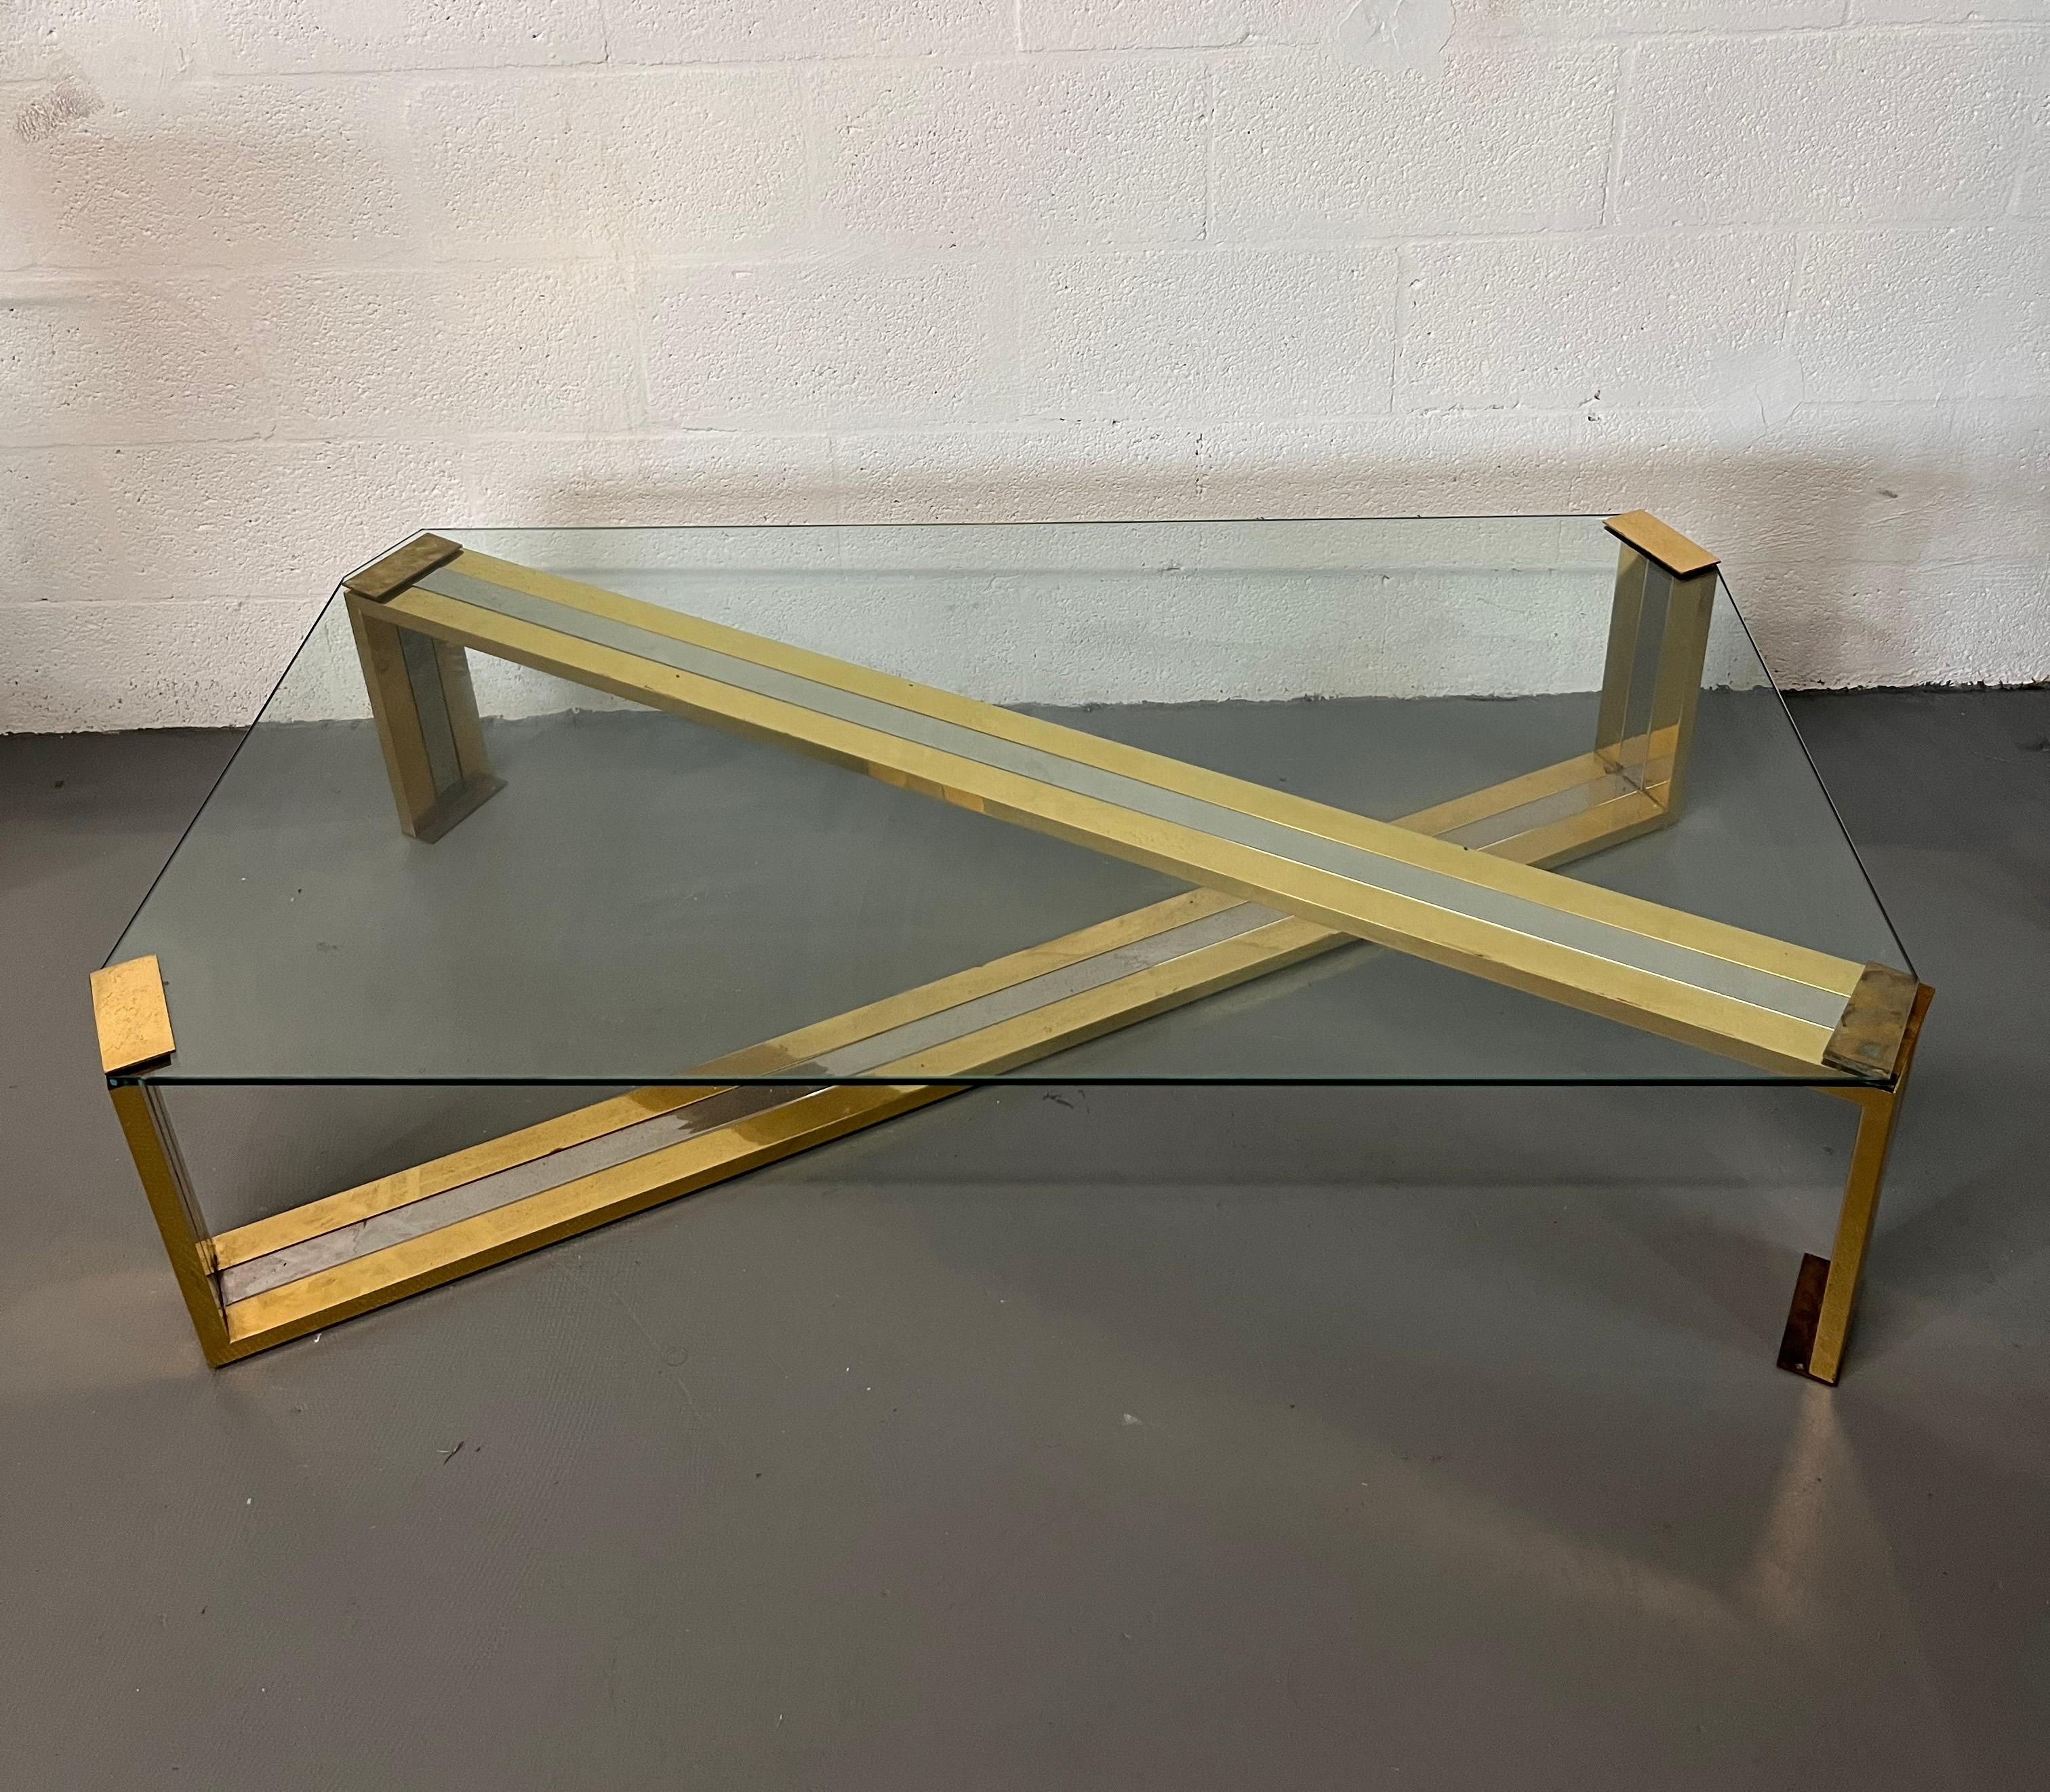 Grande table basse en chrome et laiton poli  en métal avec un plateau en verre épais.
Style Mastercraft
New York designer circa 1980